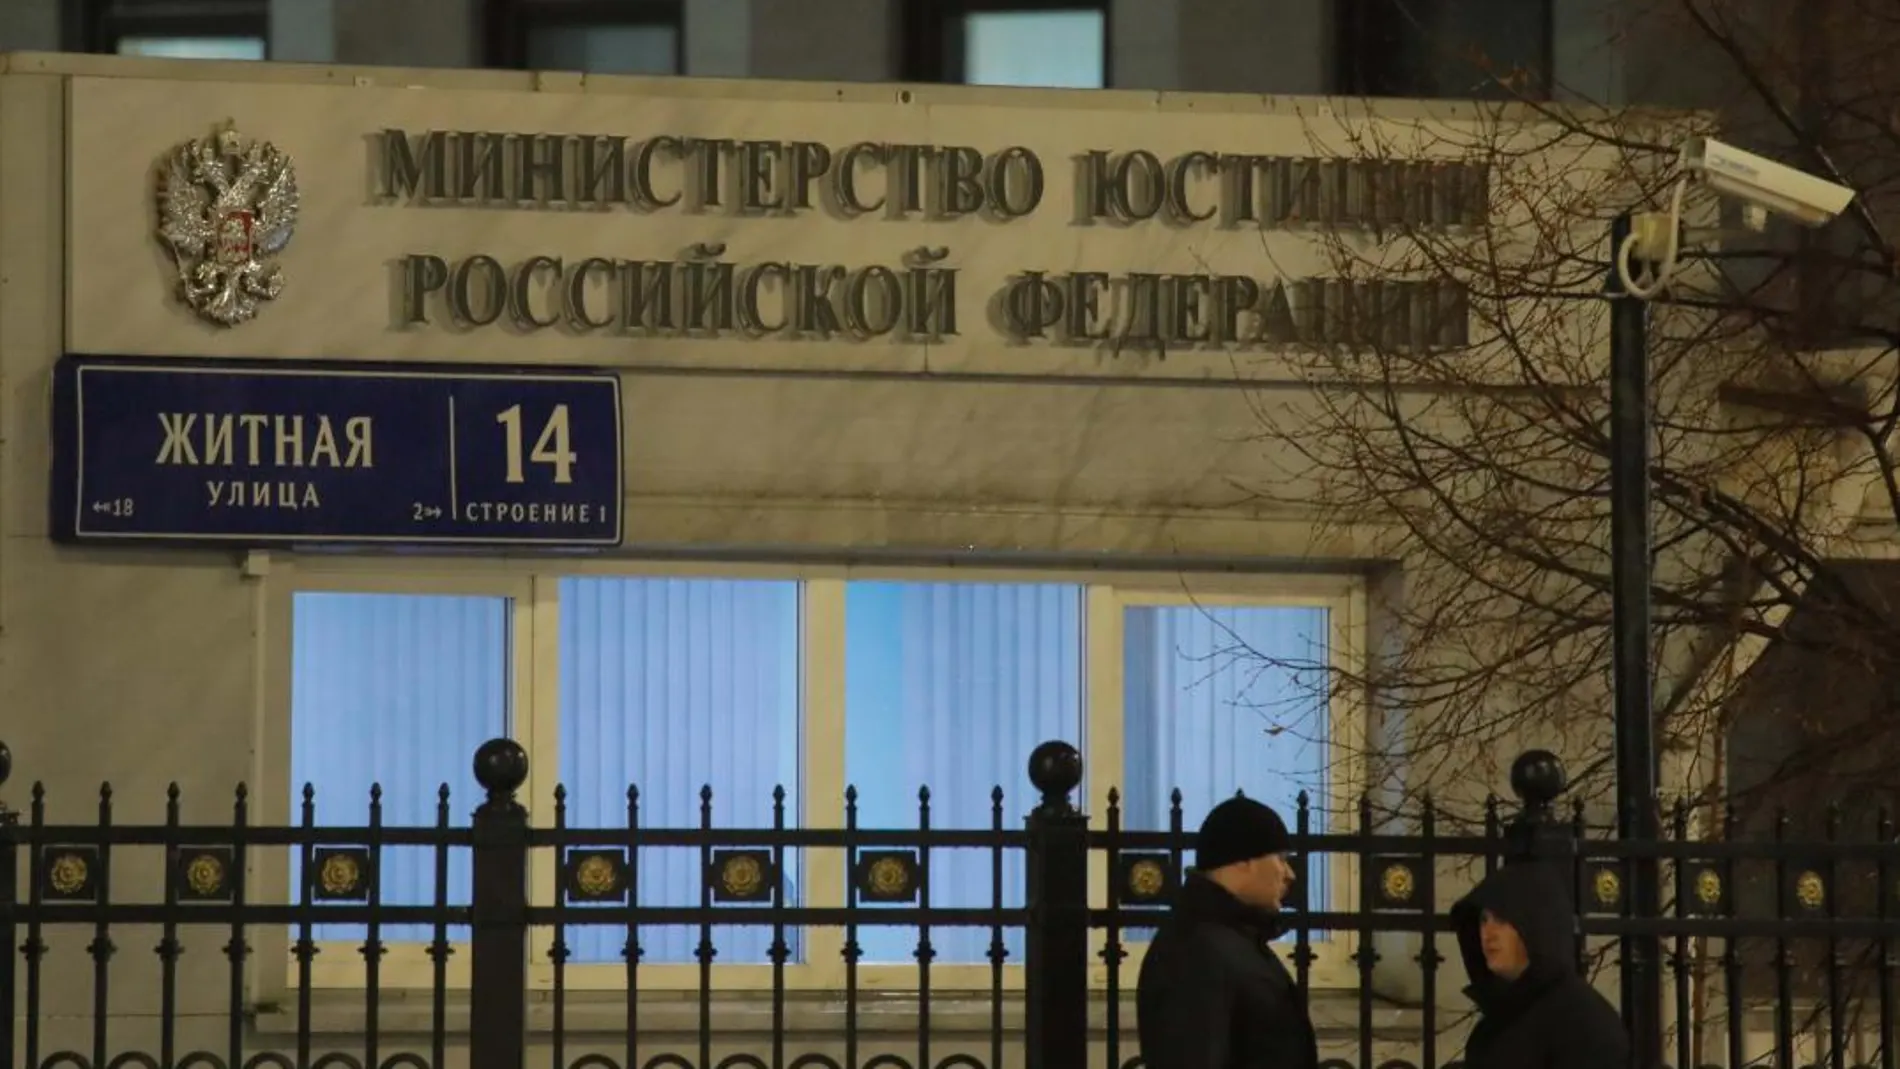 Sede del Ministerio de Justicia ruso en Moscú